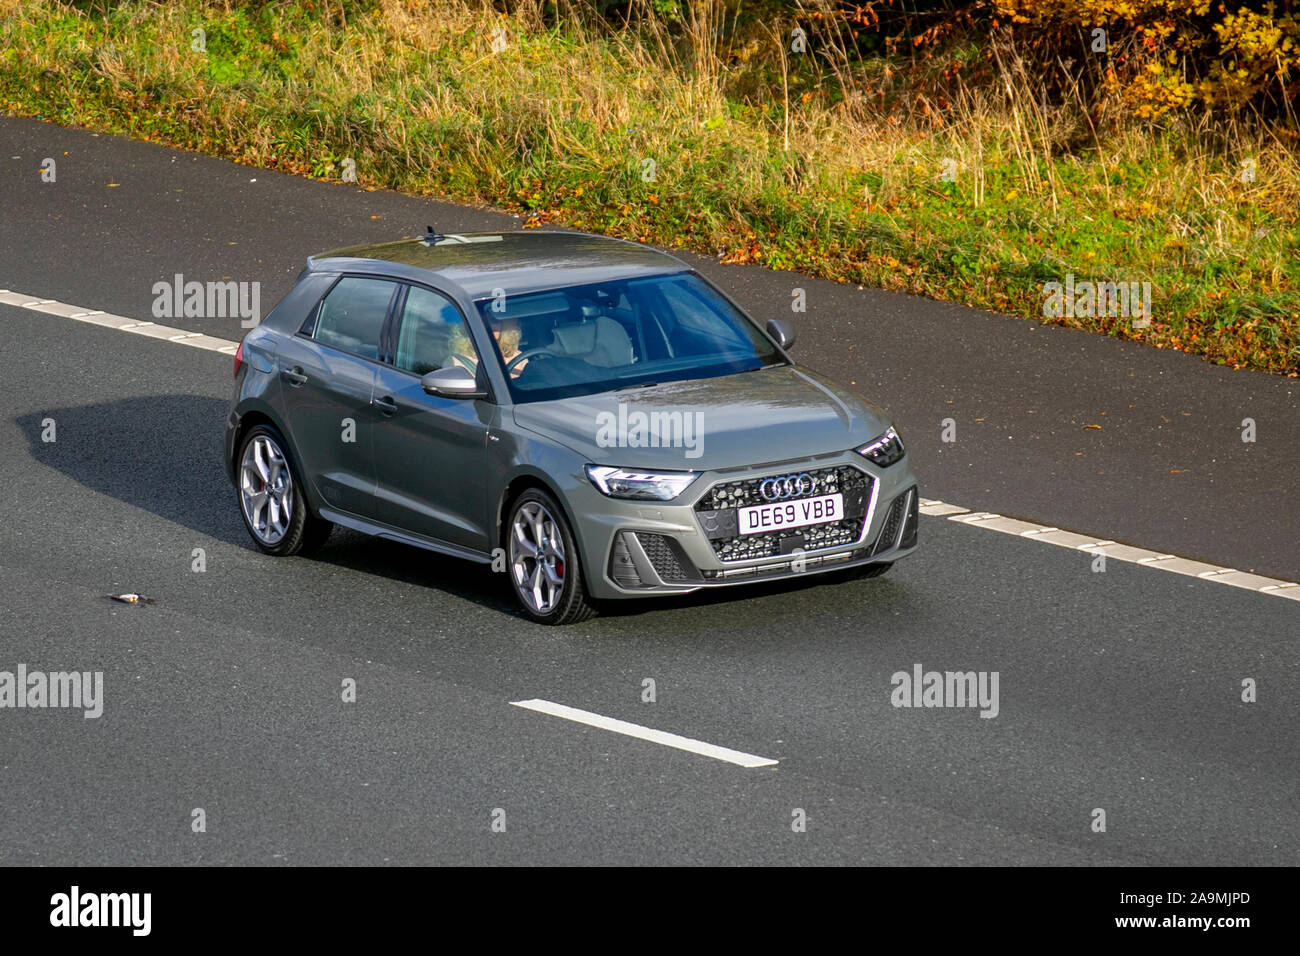 Audi A1 (A1 2) ; UK le trafic de véhicules, transports, véhicules modernes, voitures, vers le sud sur la voie 3 de l'autoroute autoroute M61. Banque D'Images